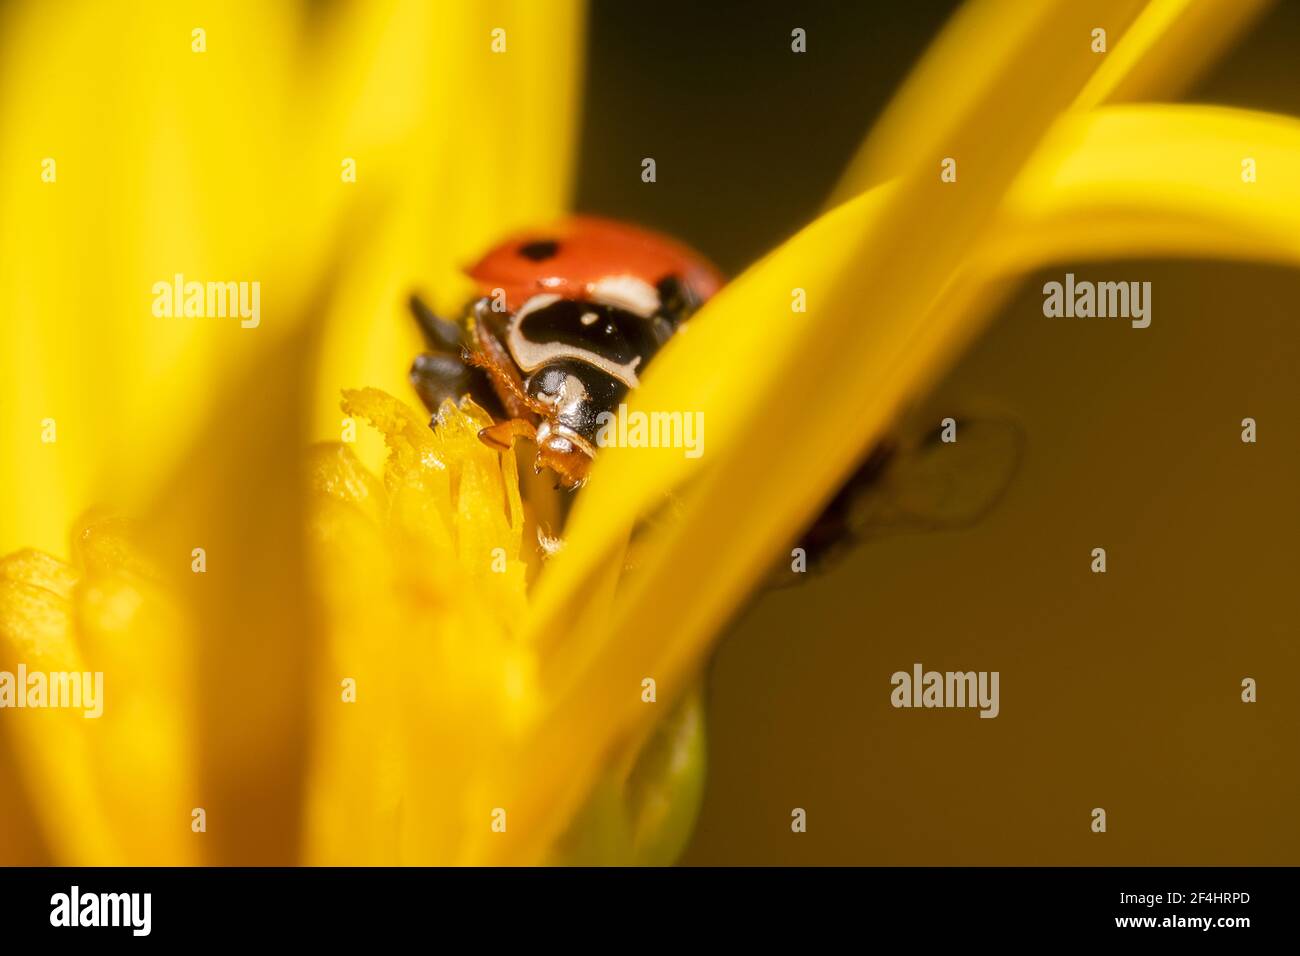 Ladybug spellato arancione e nero che si nasconde dietro una margherita gialla petali Foto Stock